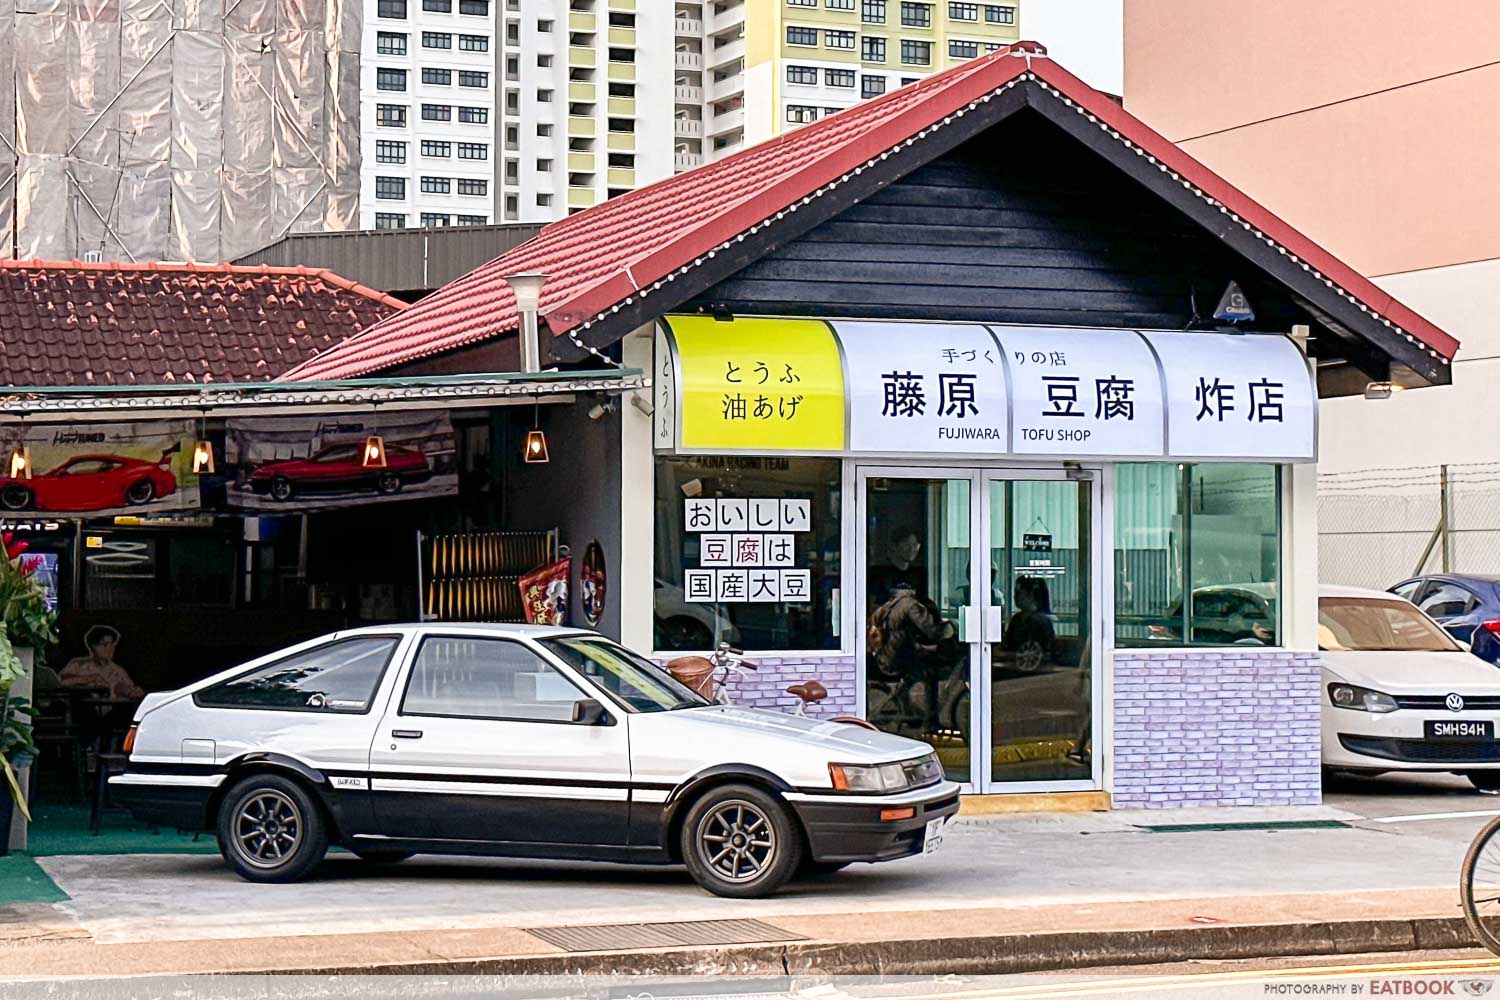 fujiwara-tofu-shop-storefront